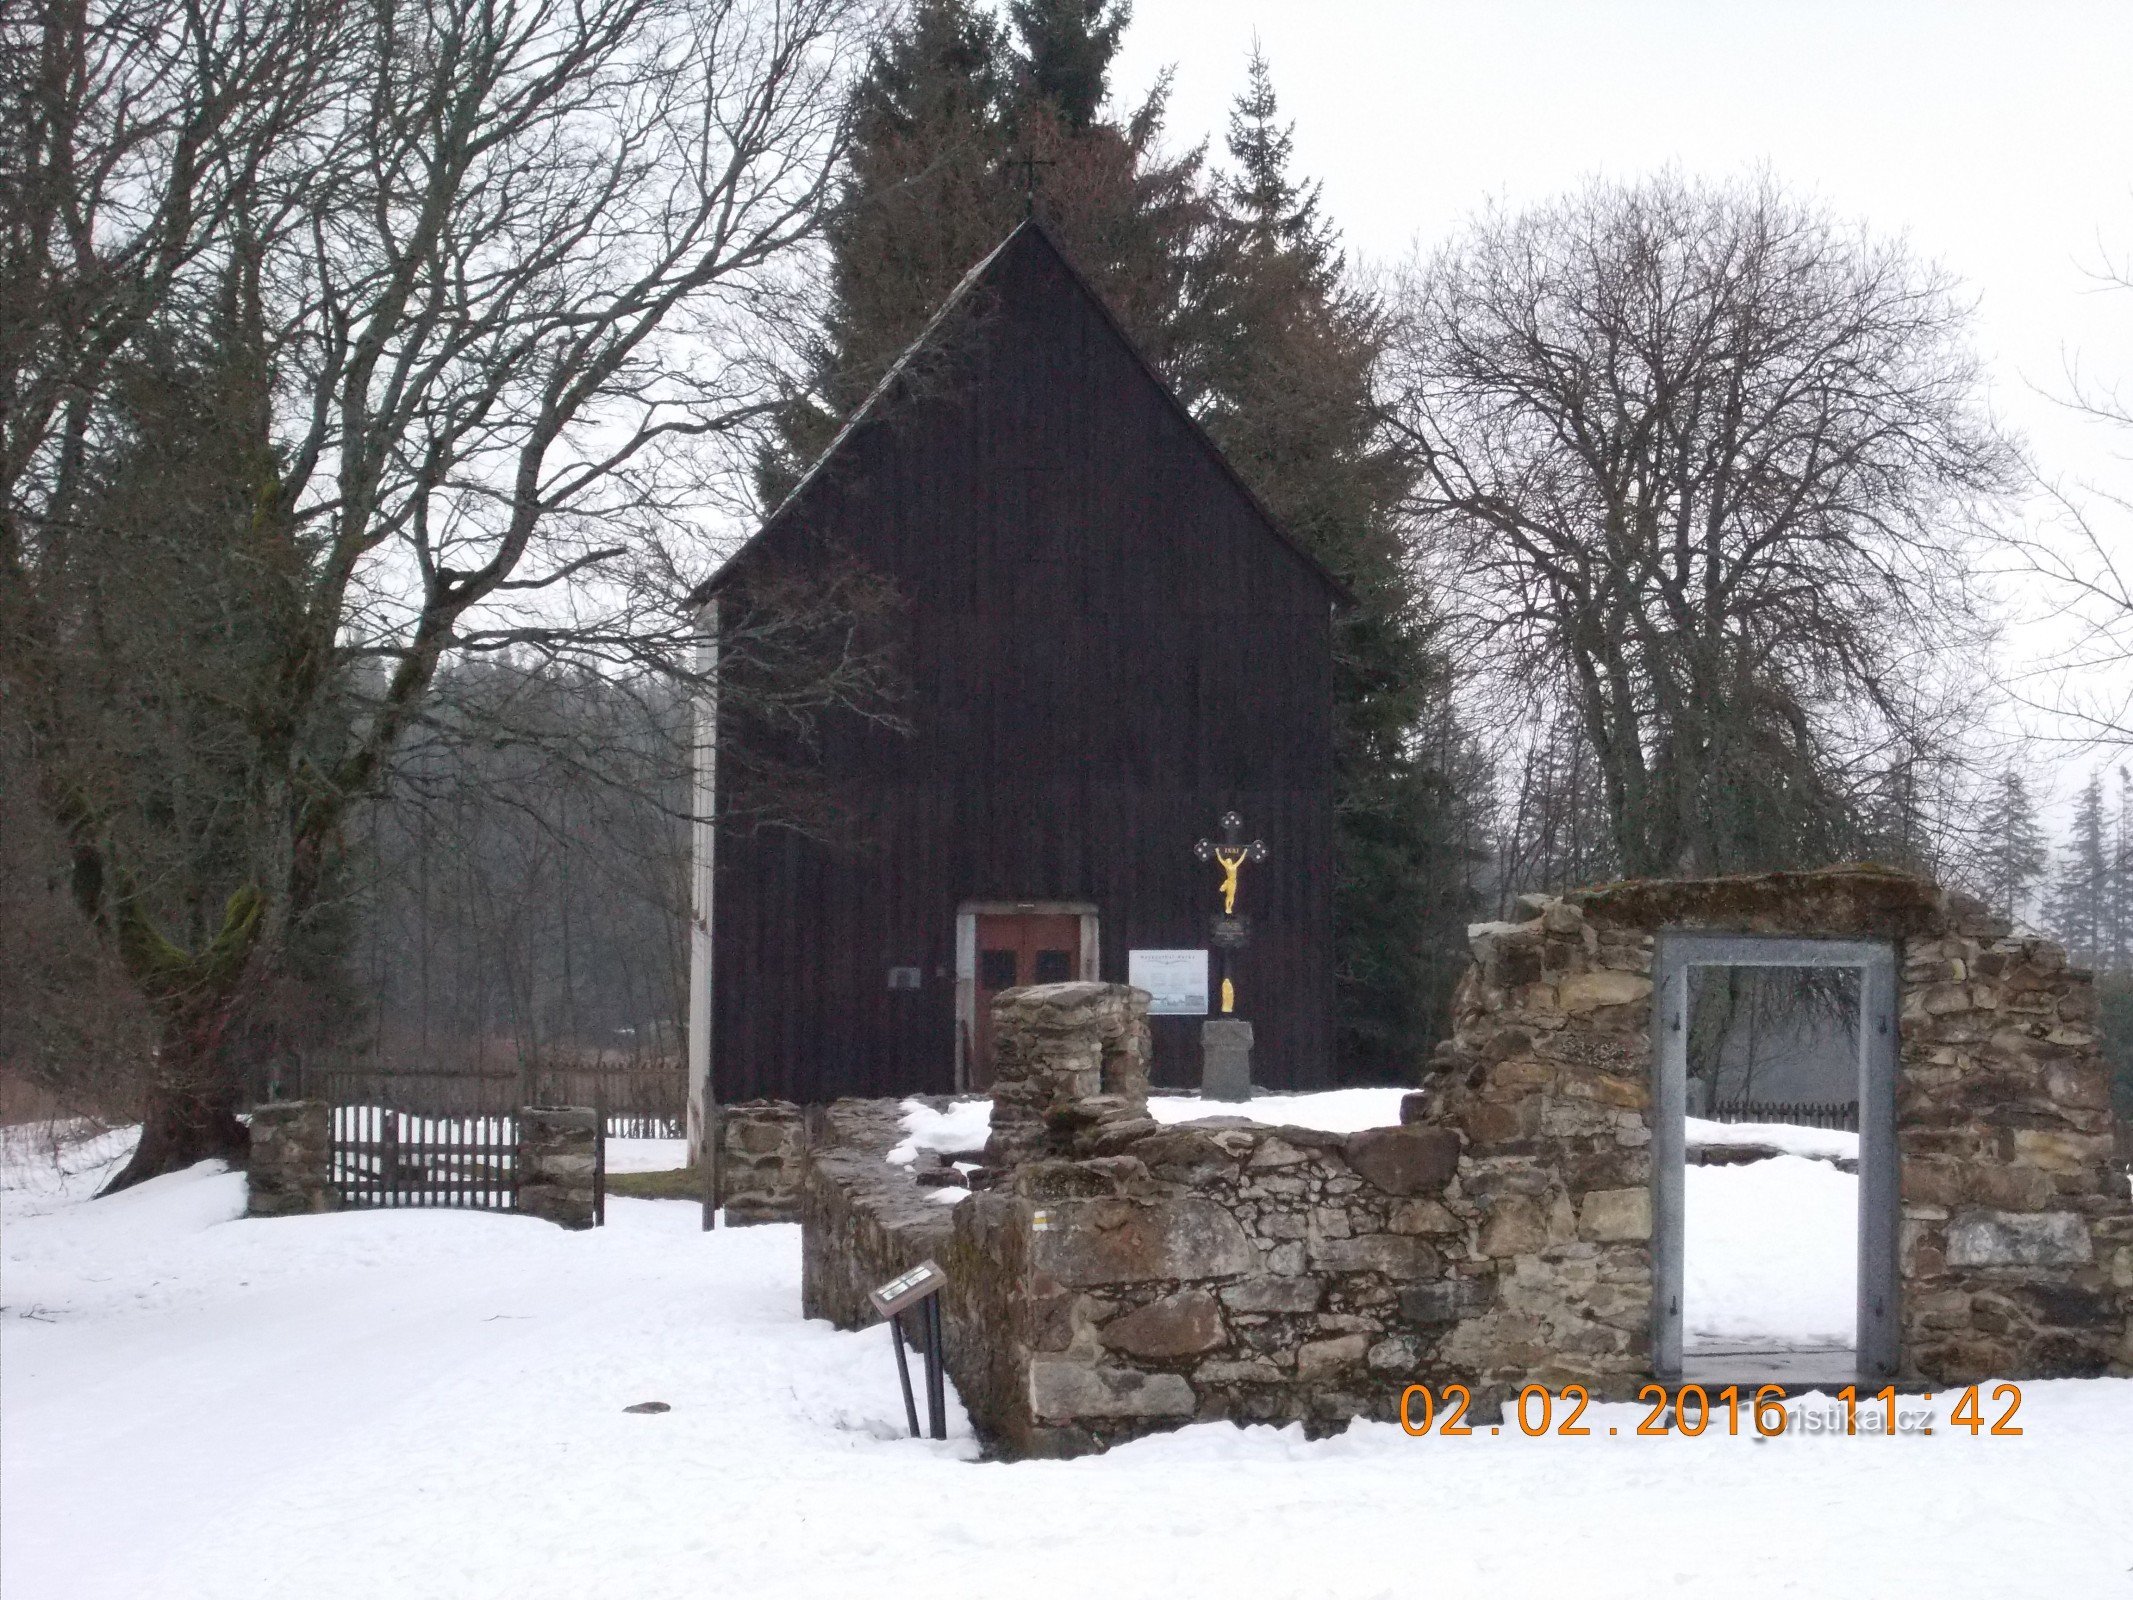 Friedhofskapelle St. Kreuze im Dorf Hůrka